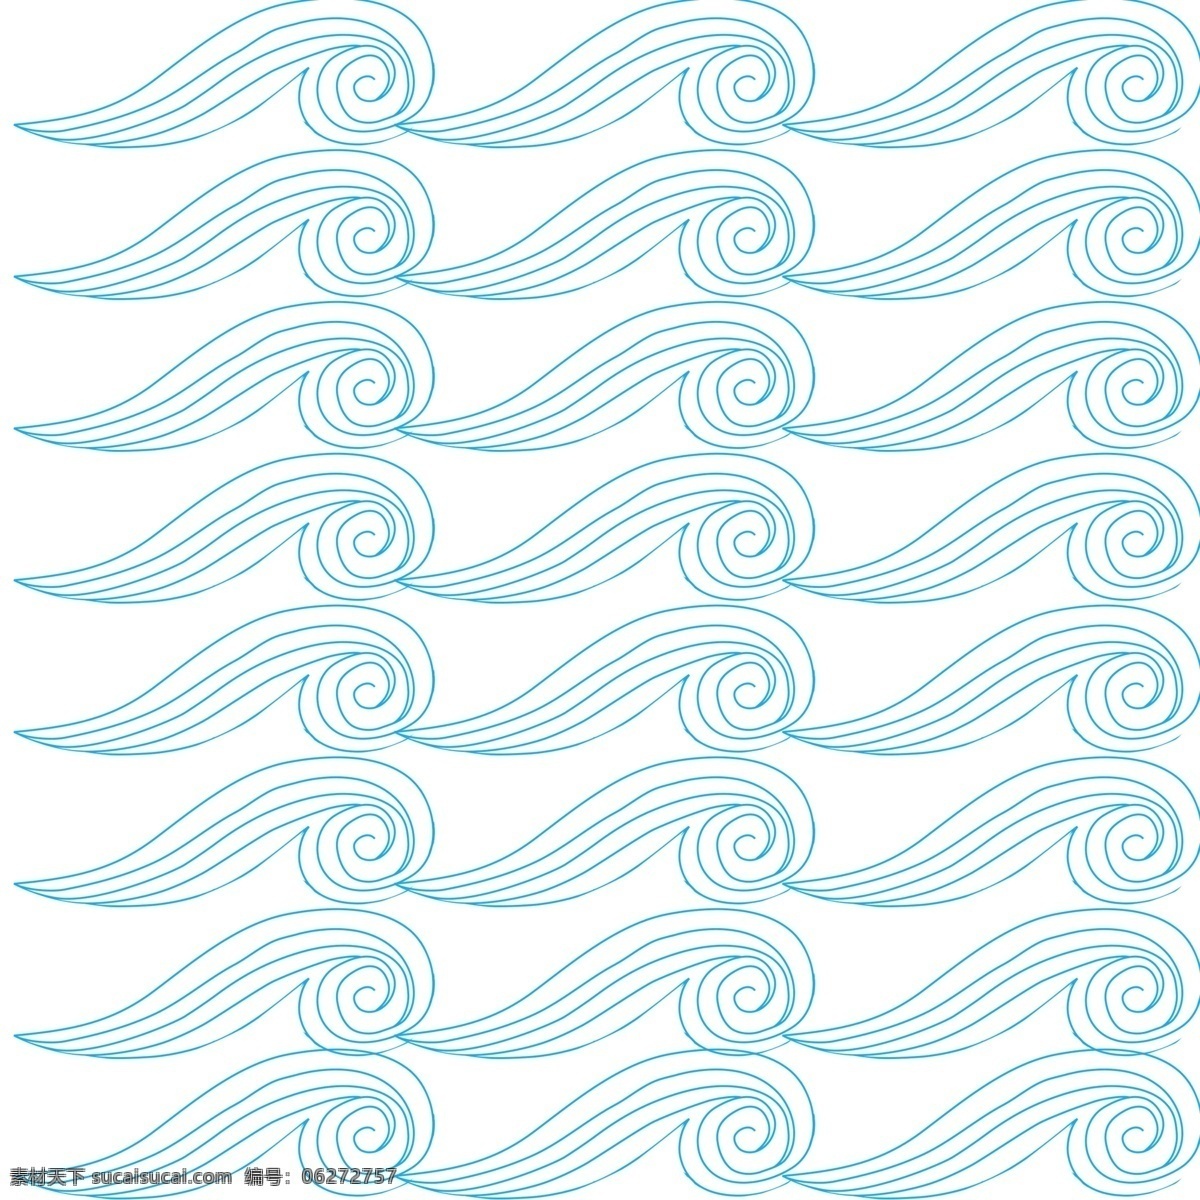 海浪底纹元素 海浪 海浪元素 海浪素材 海浪底纹 底纹元素 底纹素材 波浪 波浪元素 波浪素材 水花 水波 水波元素 水波素材 蓝色元素 蓝色素材 分层